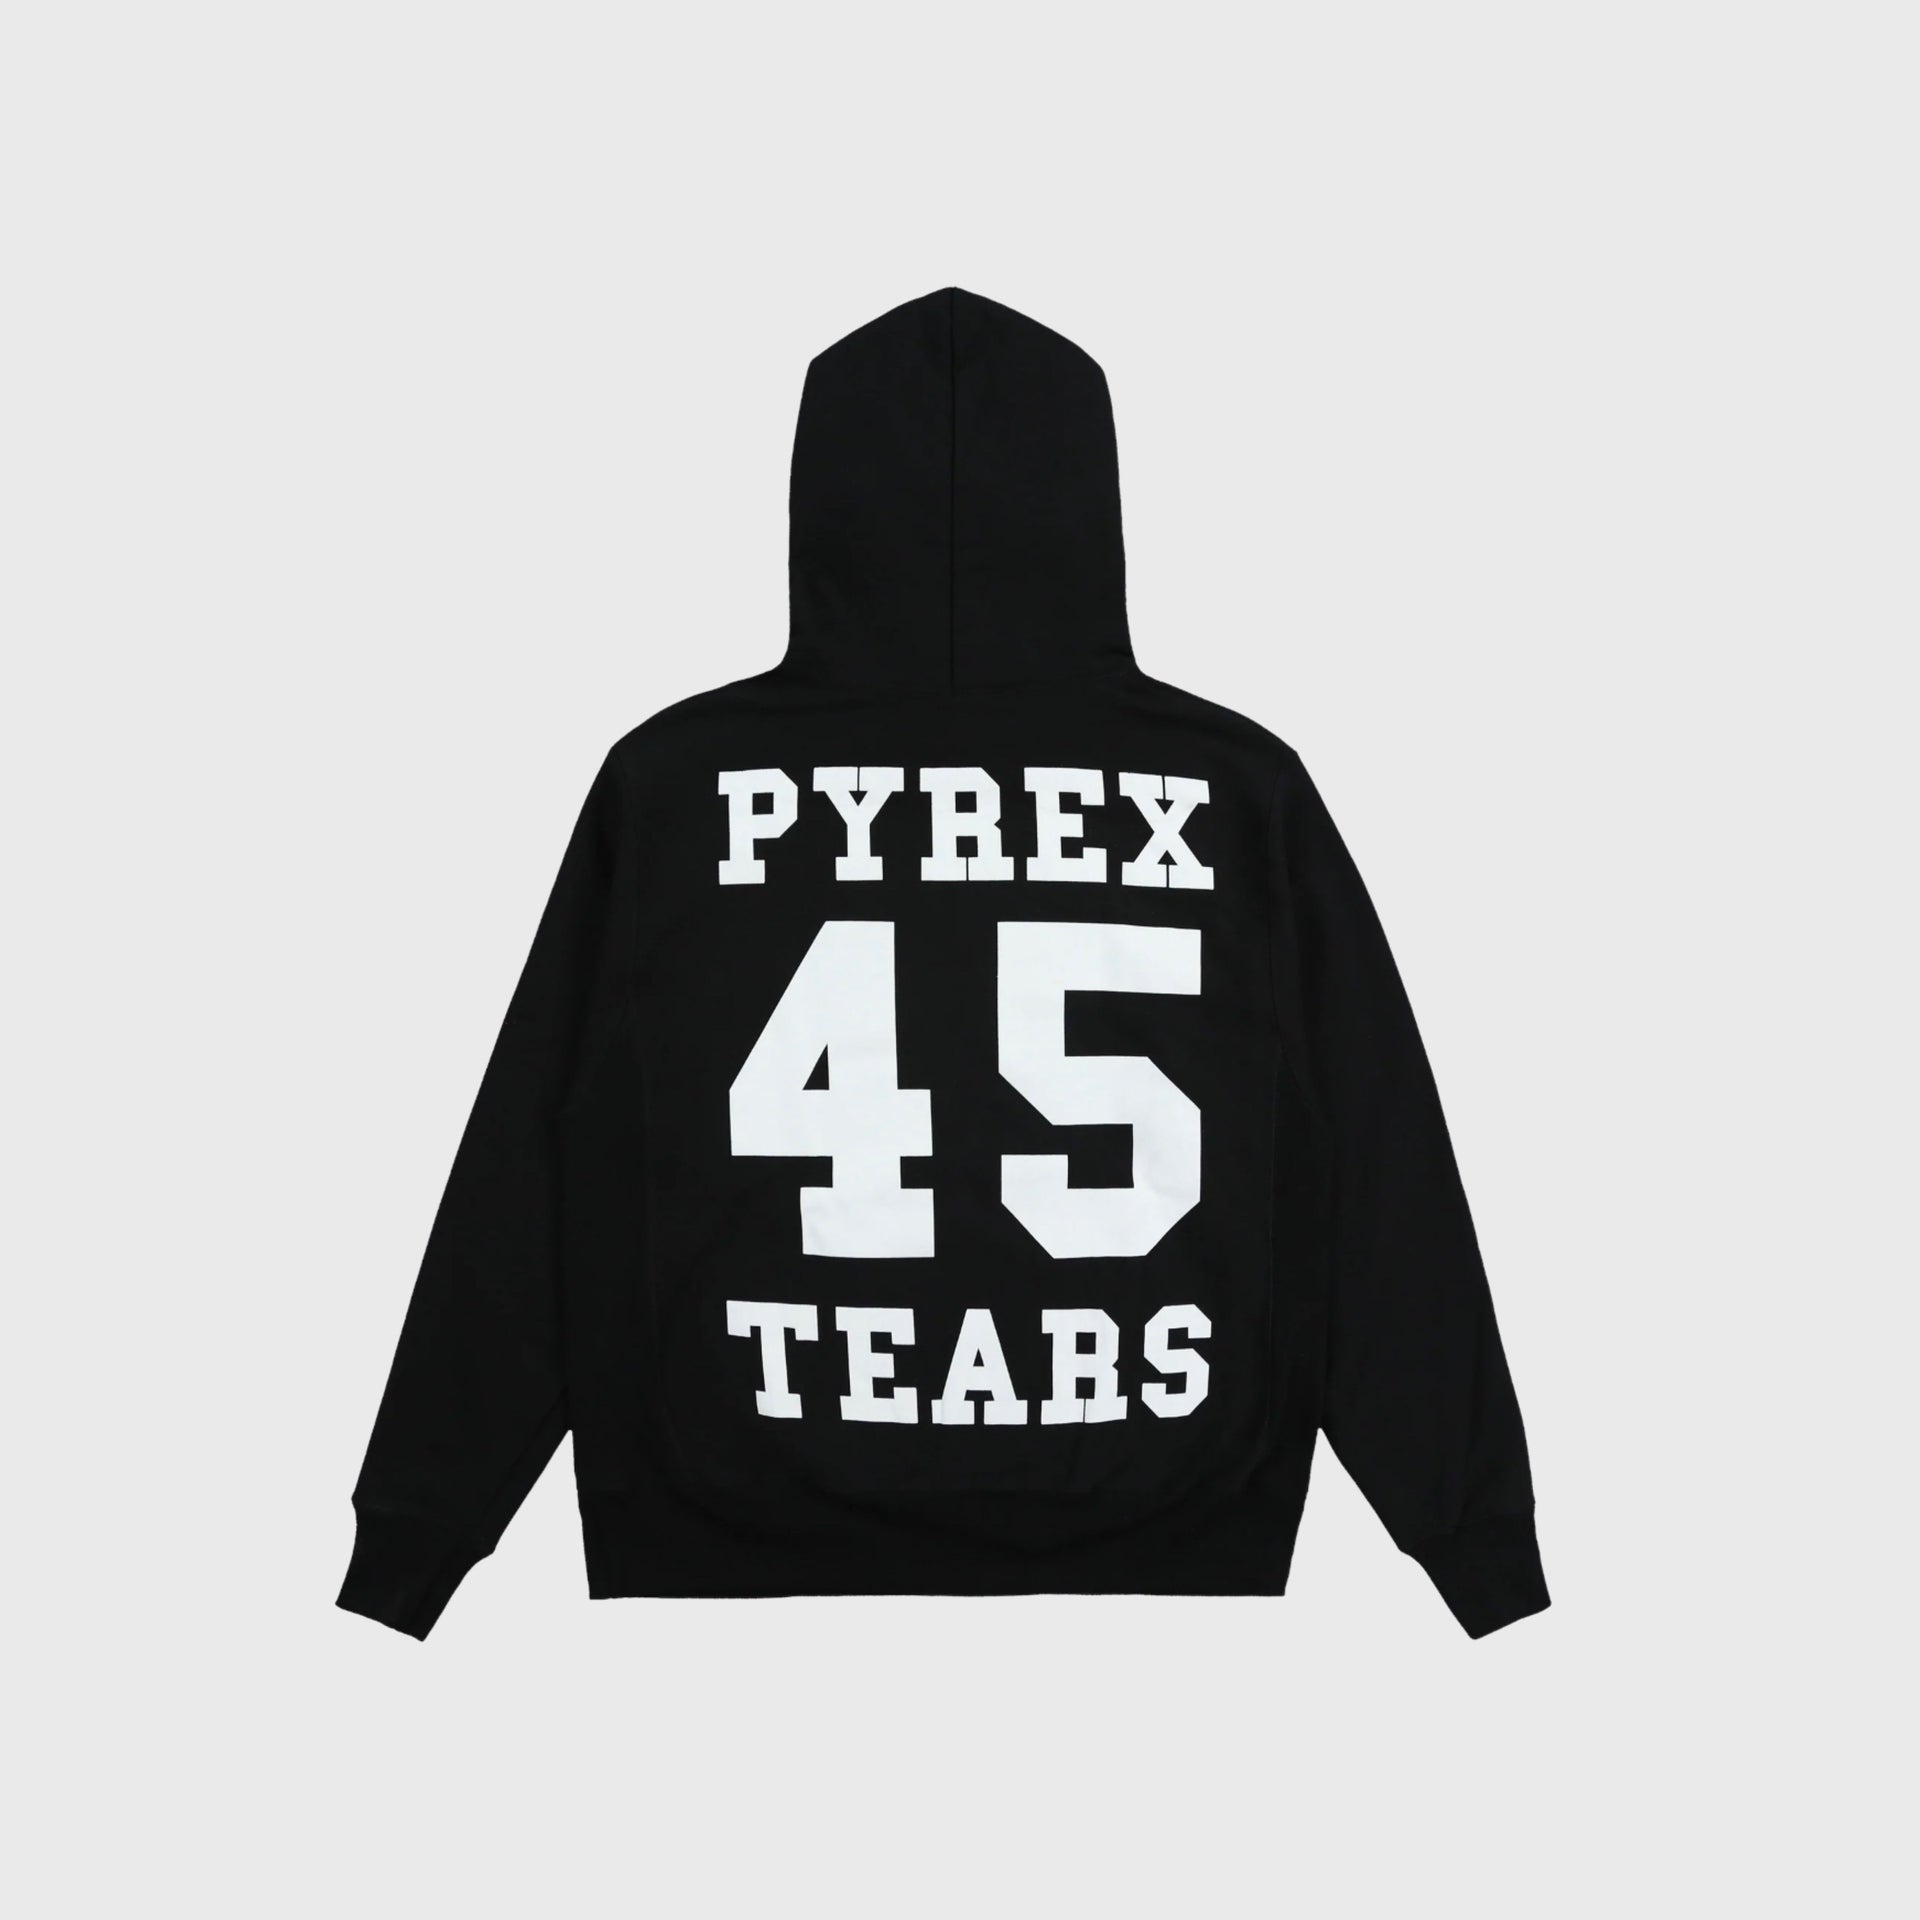 Pyrex Tears Hoodie